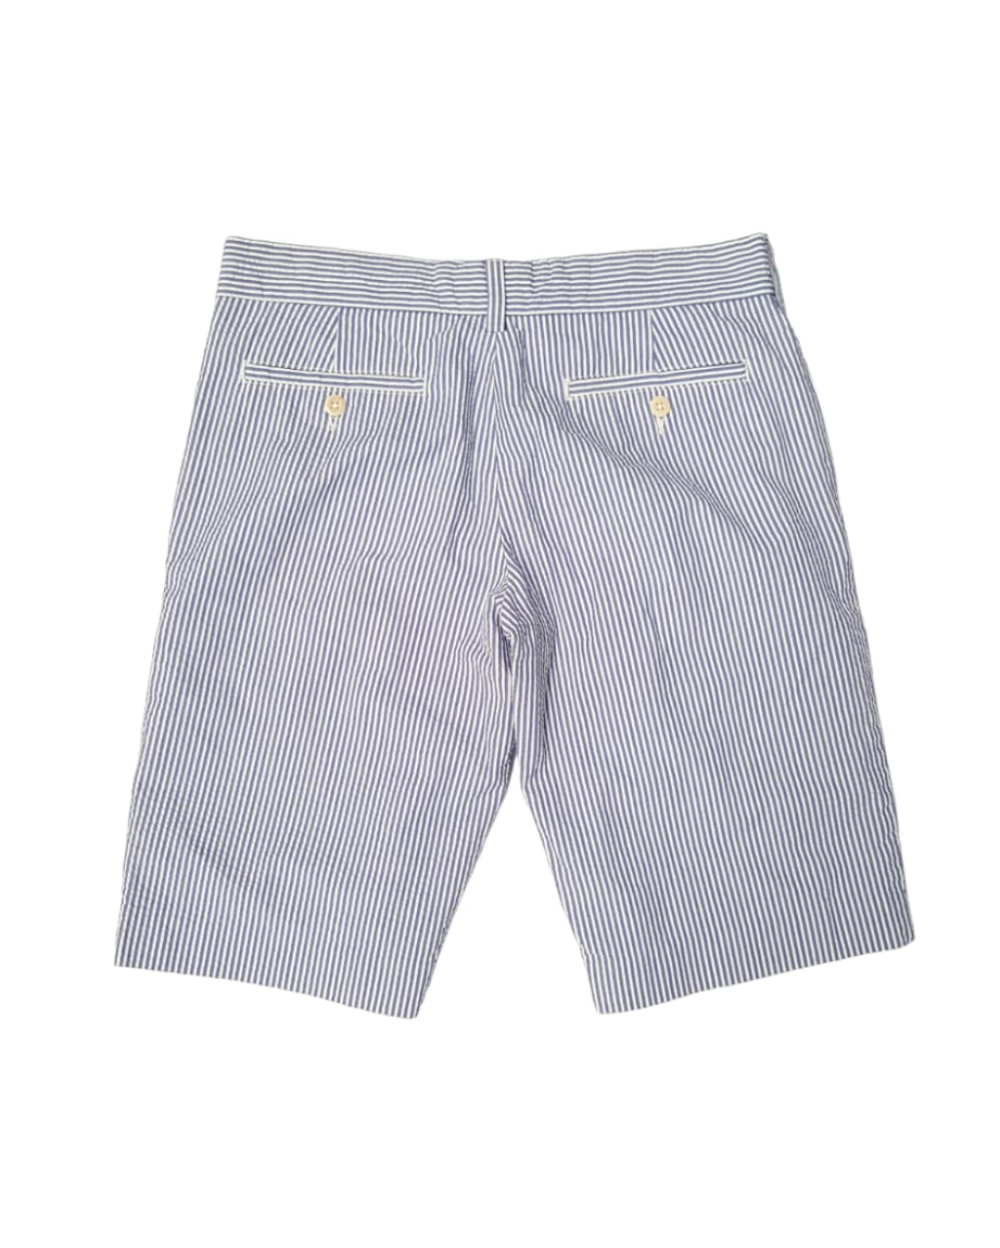 Shorts Casuales Ralph Lauren